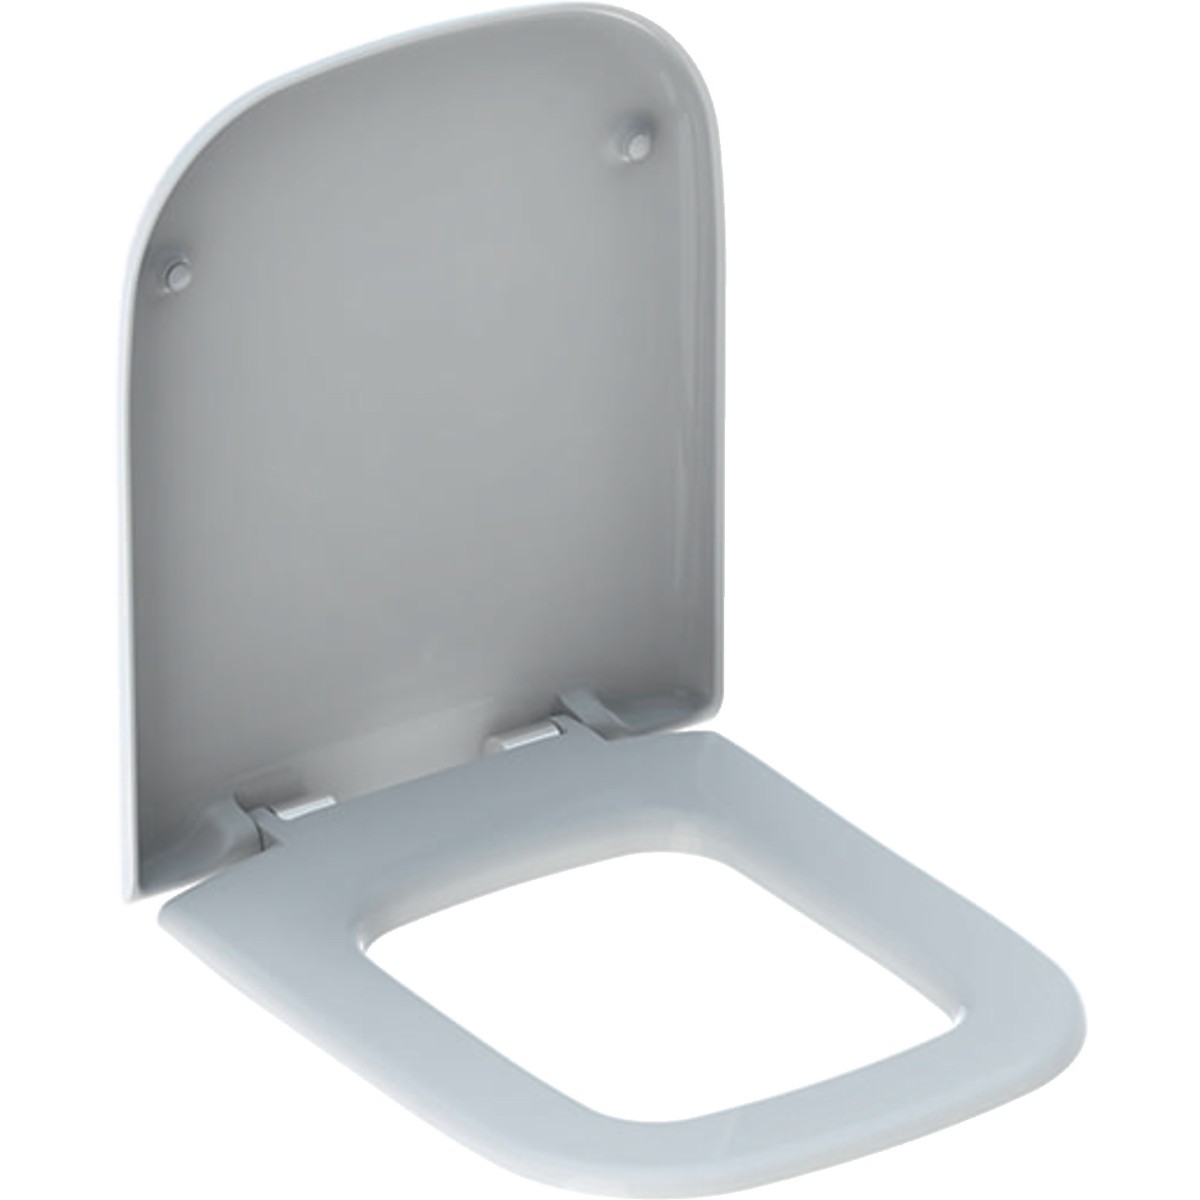 Geberit myDay Toilet Seat & Cover [575410000]